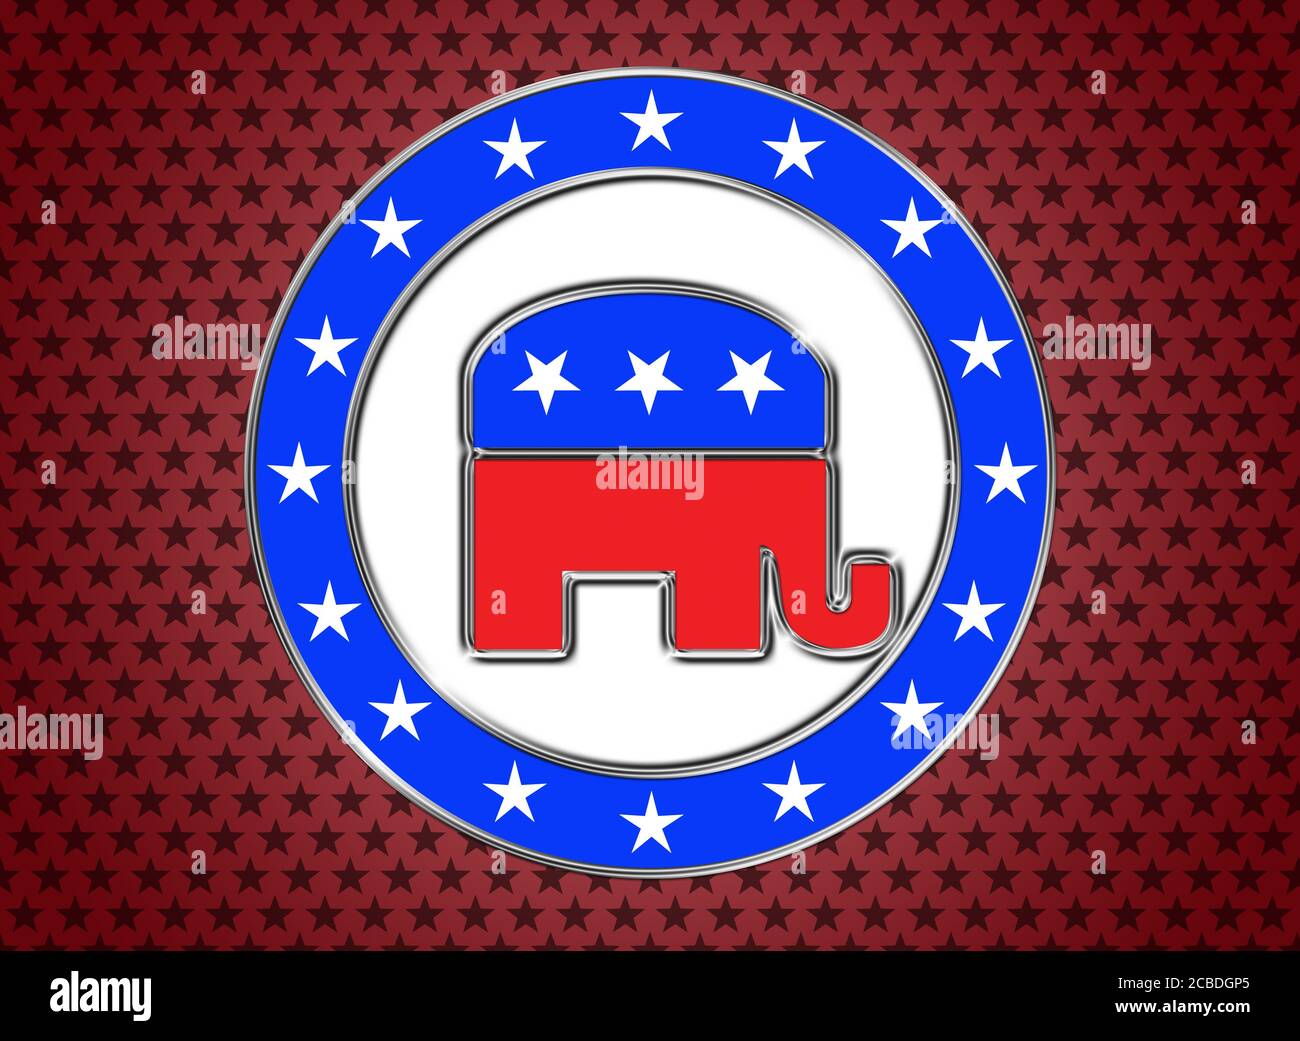 Republican Vote Button Stock Photo